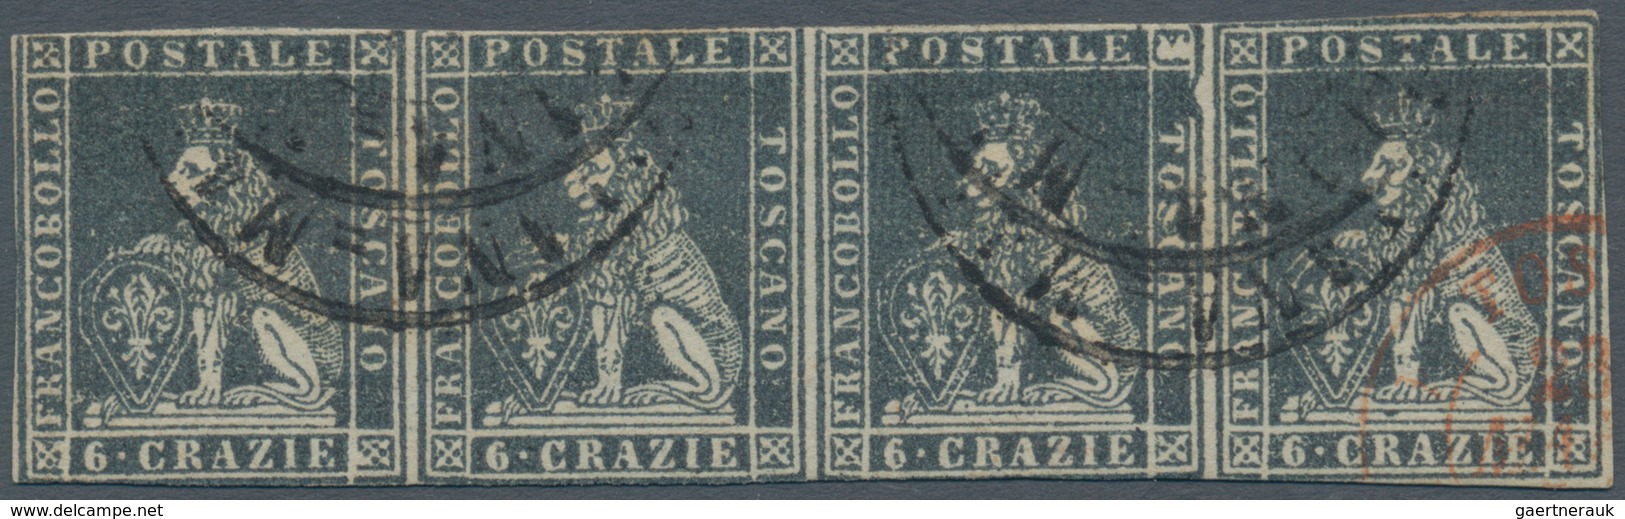 00893 Italien - Altitalienische Staaten: Toscana: 1851, 6 Crarie Dark Grey On Grey Paper, Horizontal Strip - Toscana